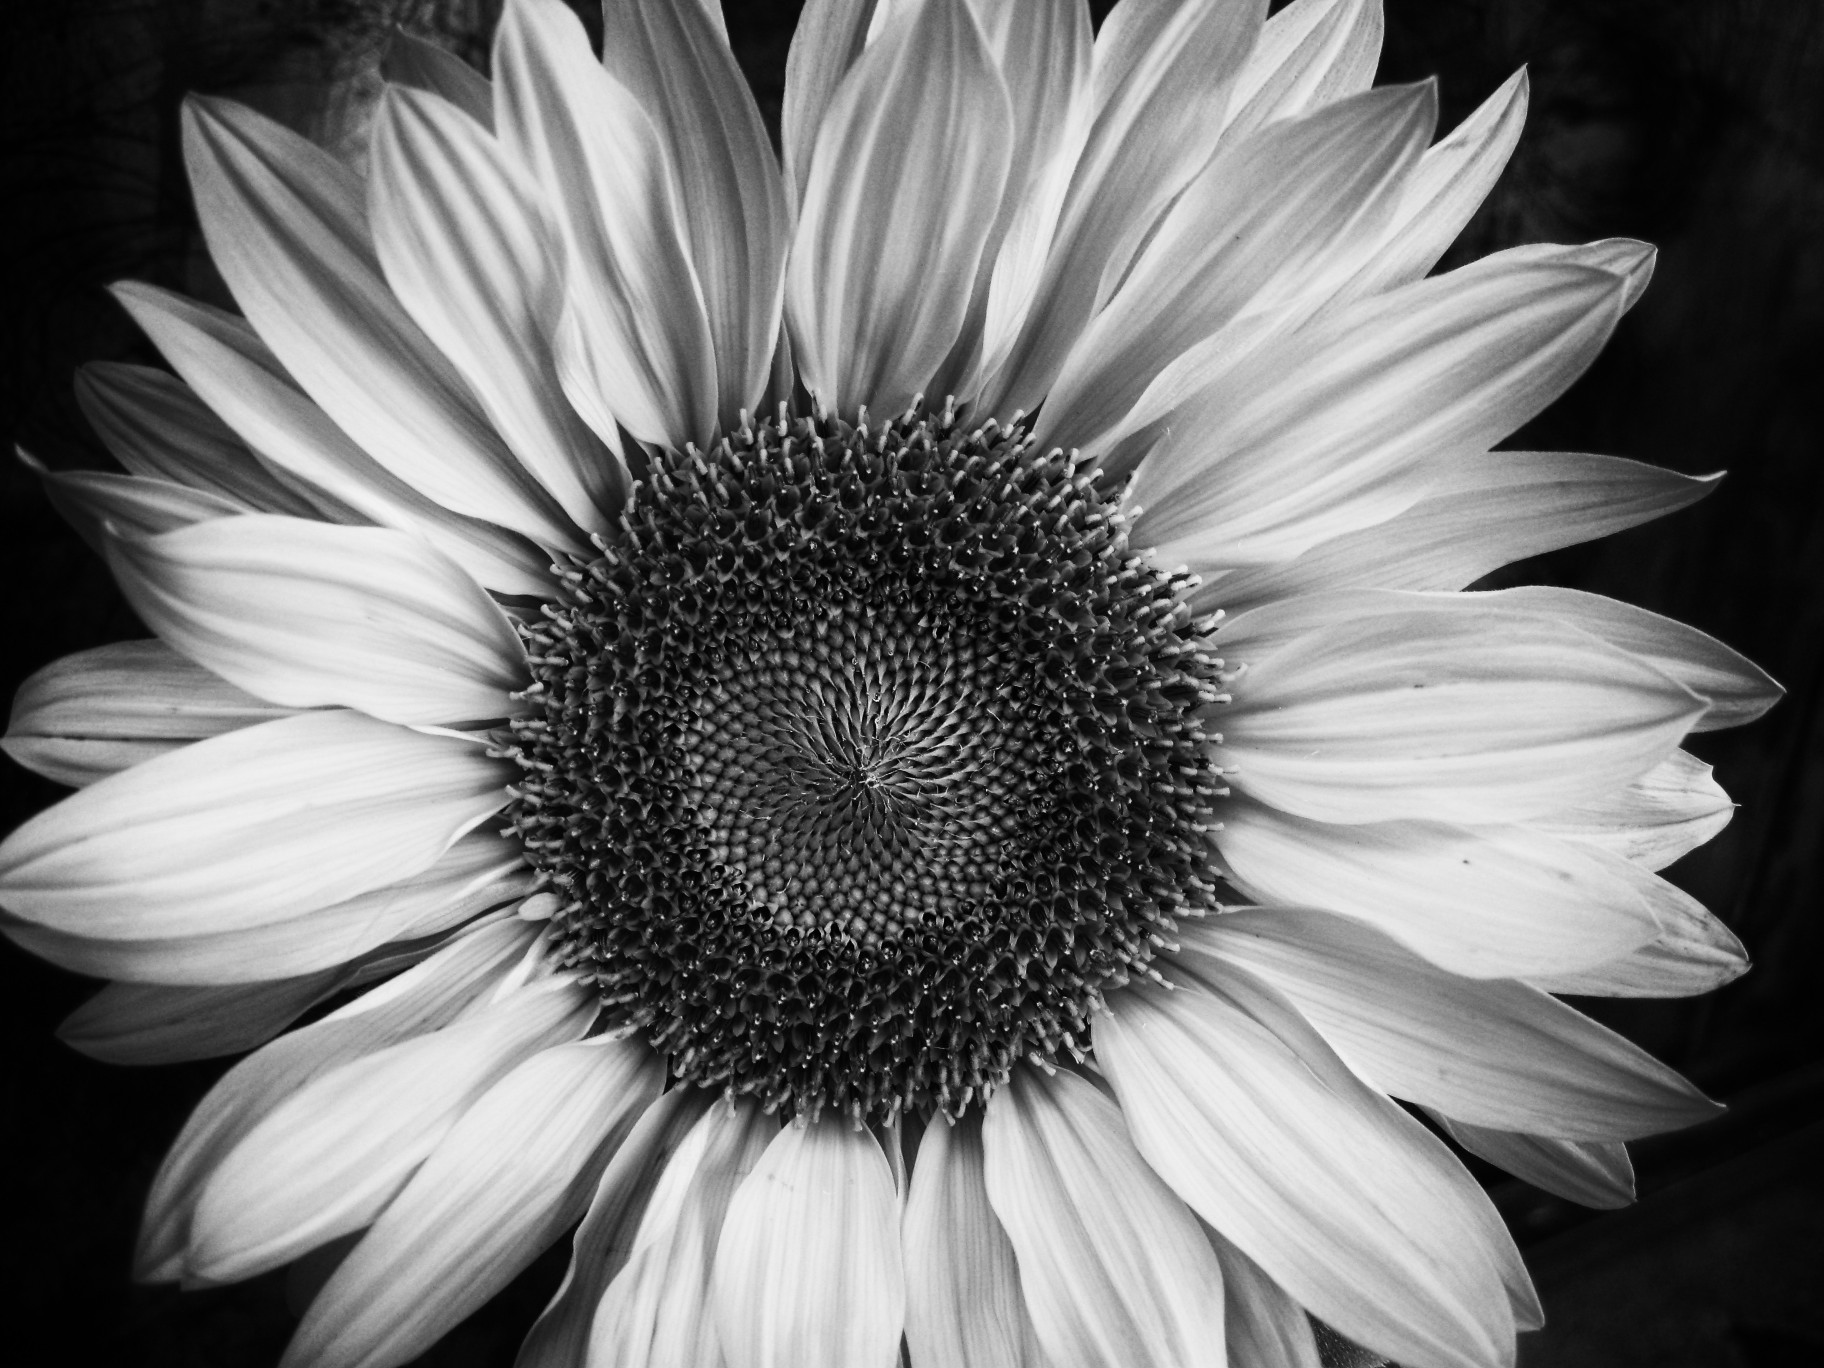 검은 색과 흰색 꽃 벽지,흑백 사진,꽃,해바라기,검정색과 흰색,하얀